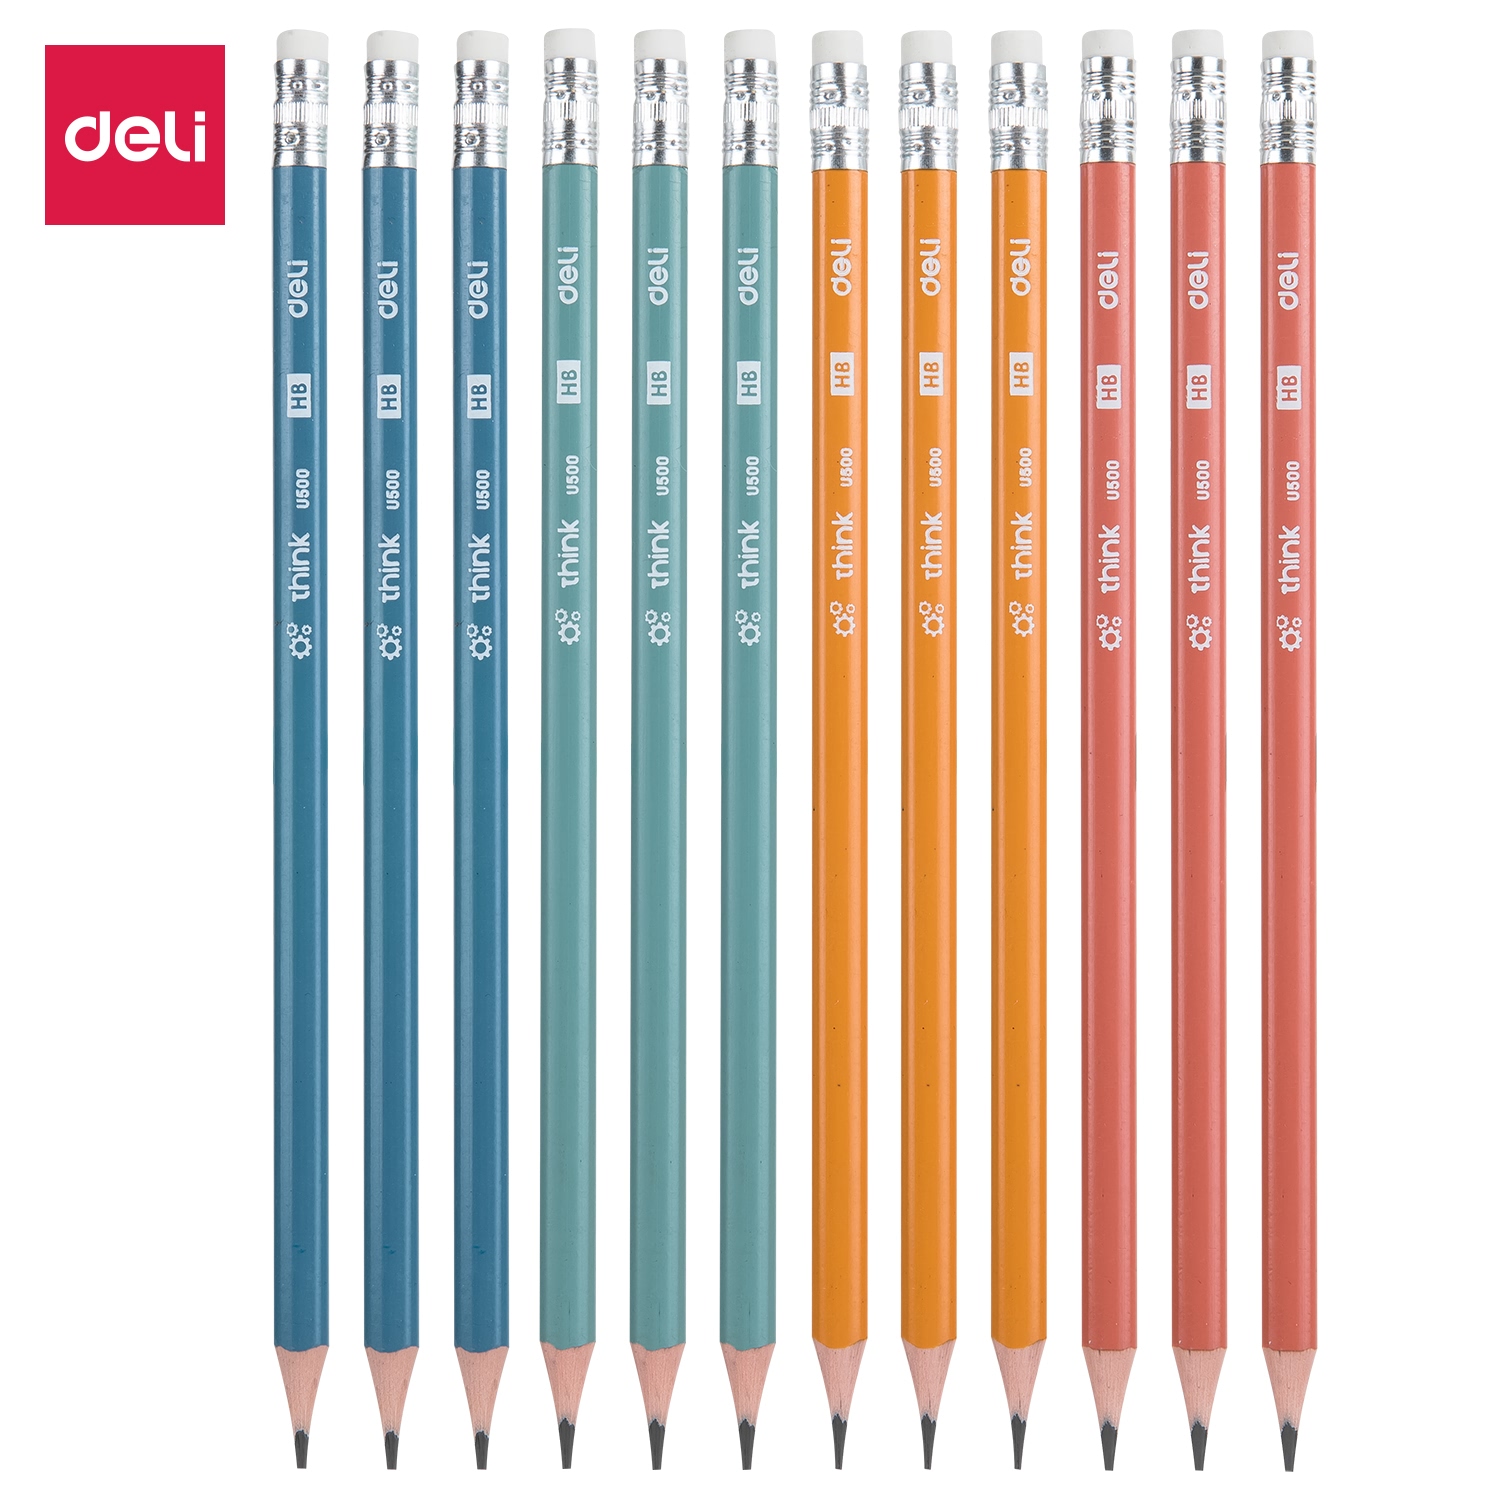 Deli-EU50000 Pencil